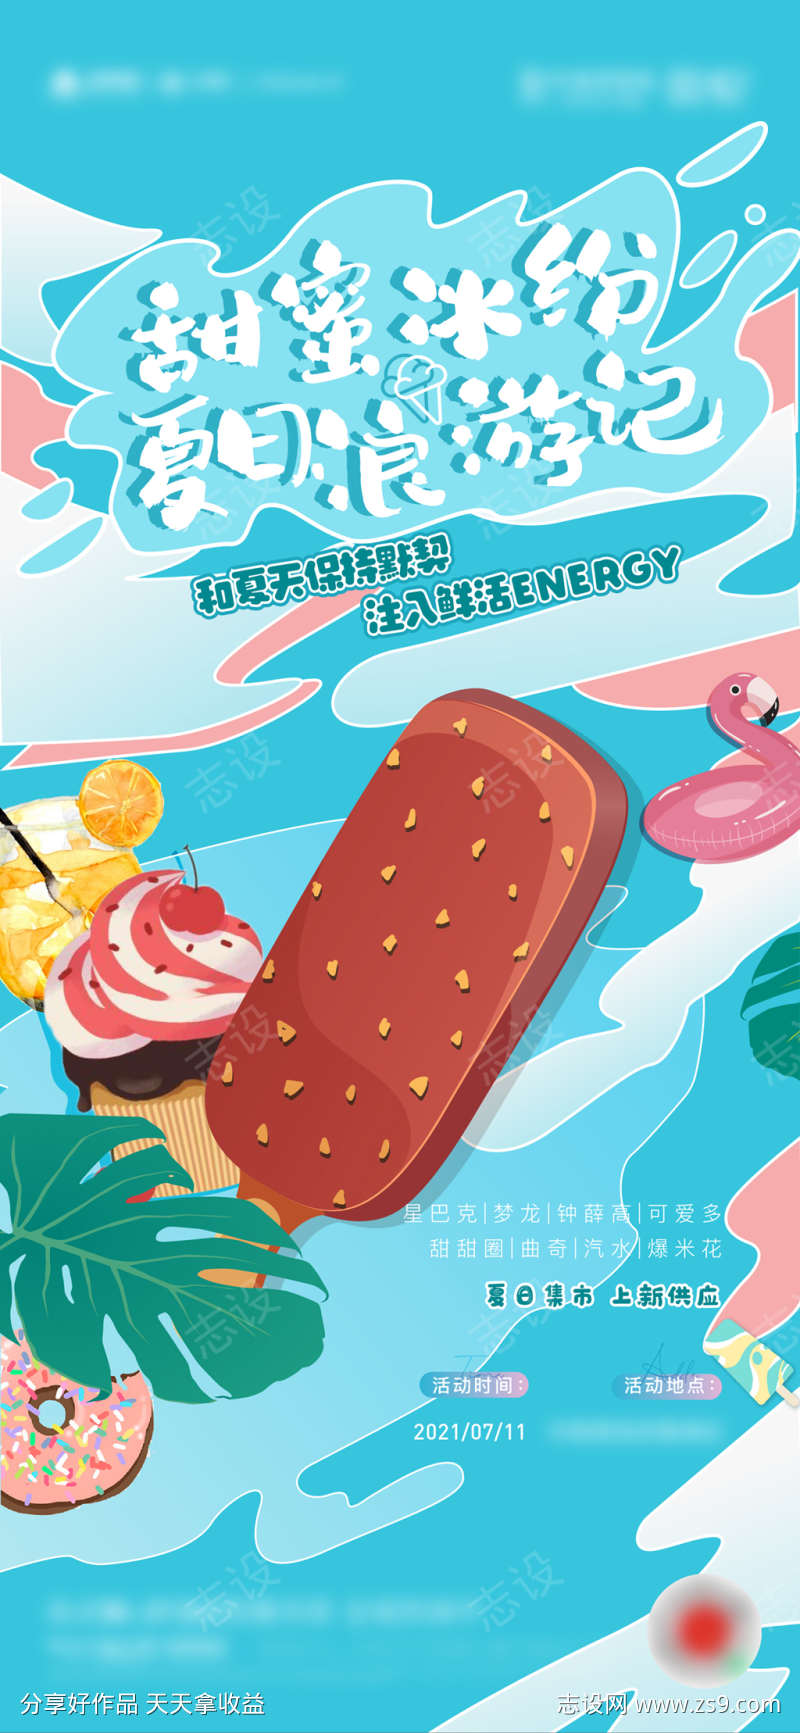 夏日冰淇淋活动海报